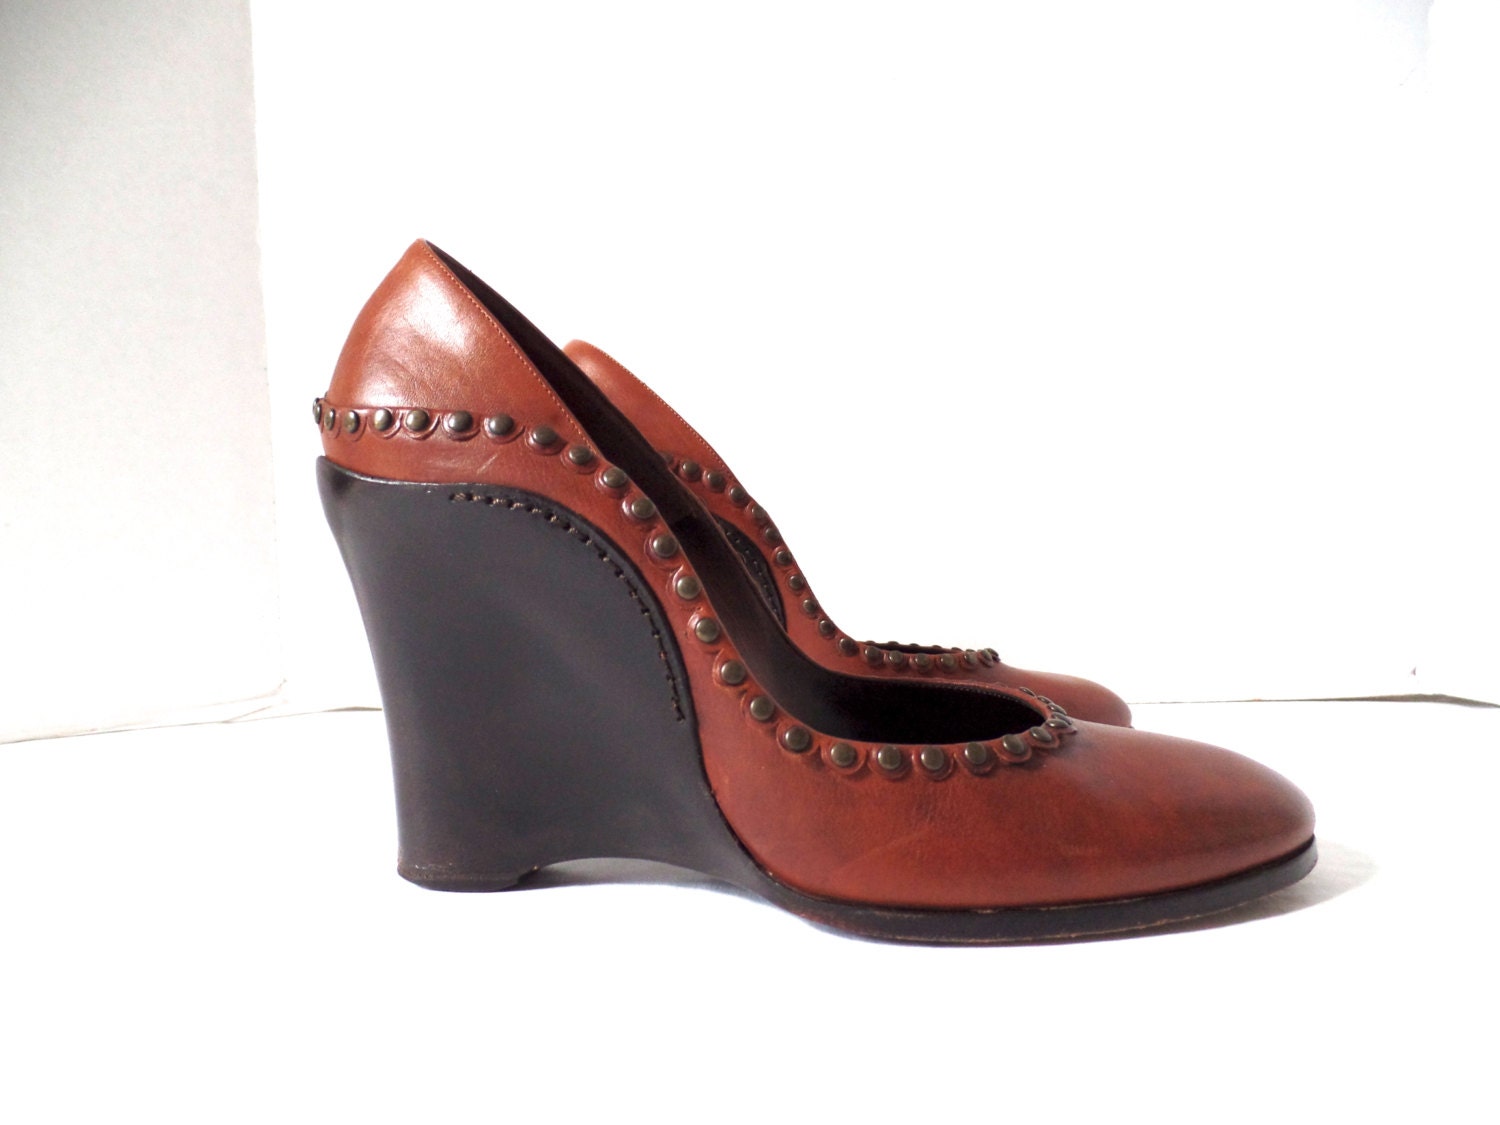 Vintage Chloe Wedge Heels Brown Leather Platform Shoes